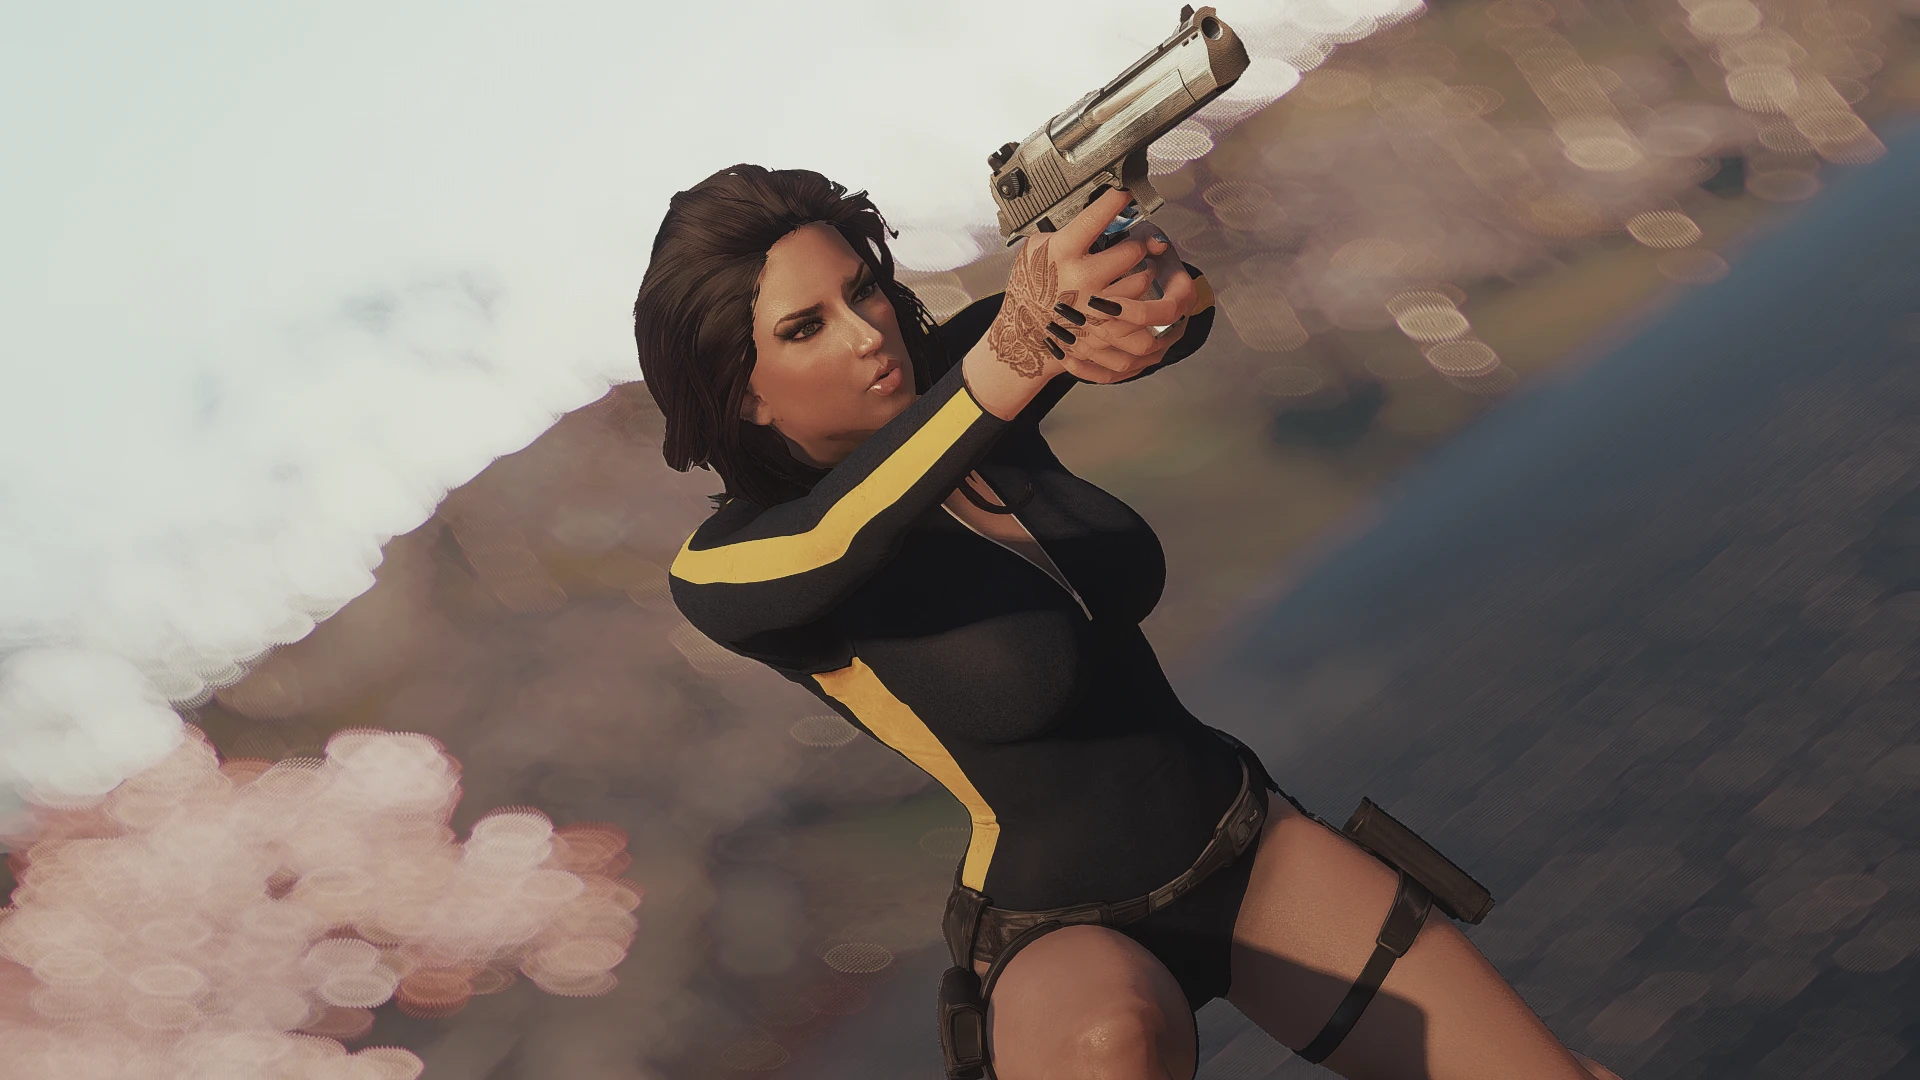 Laras Wetsuit Cbbe Atomic Beauty Bodyslide At Fallout 4 Nexus Mods And Community